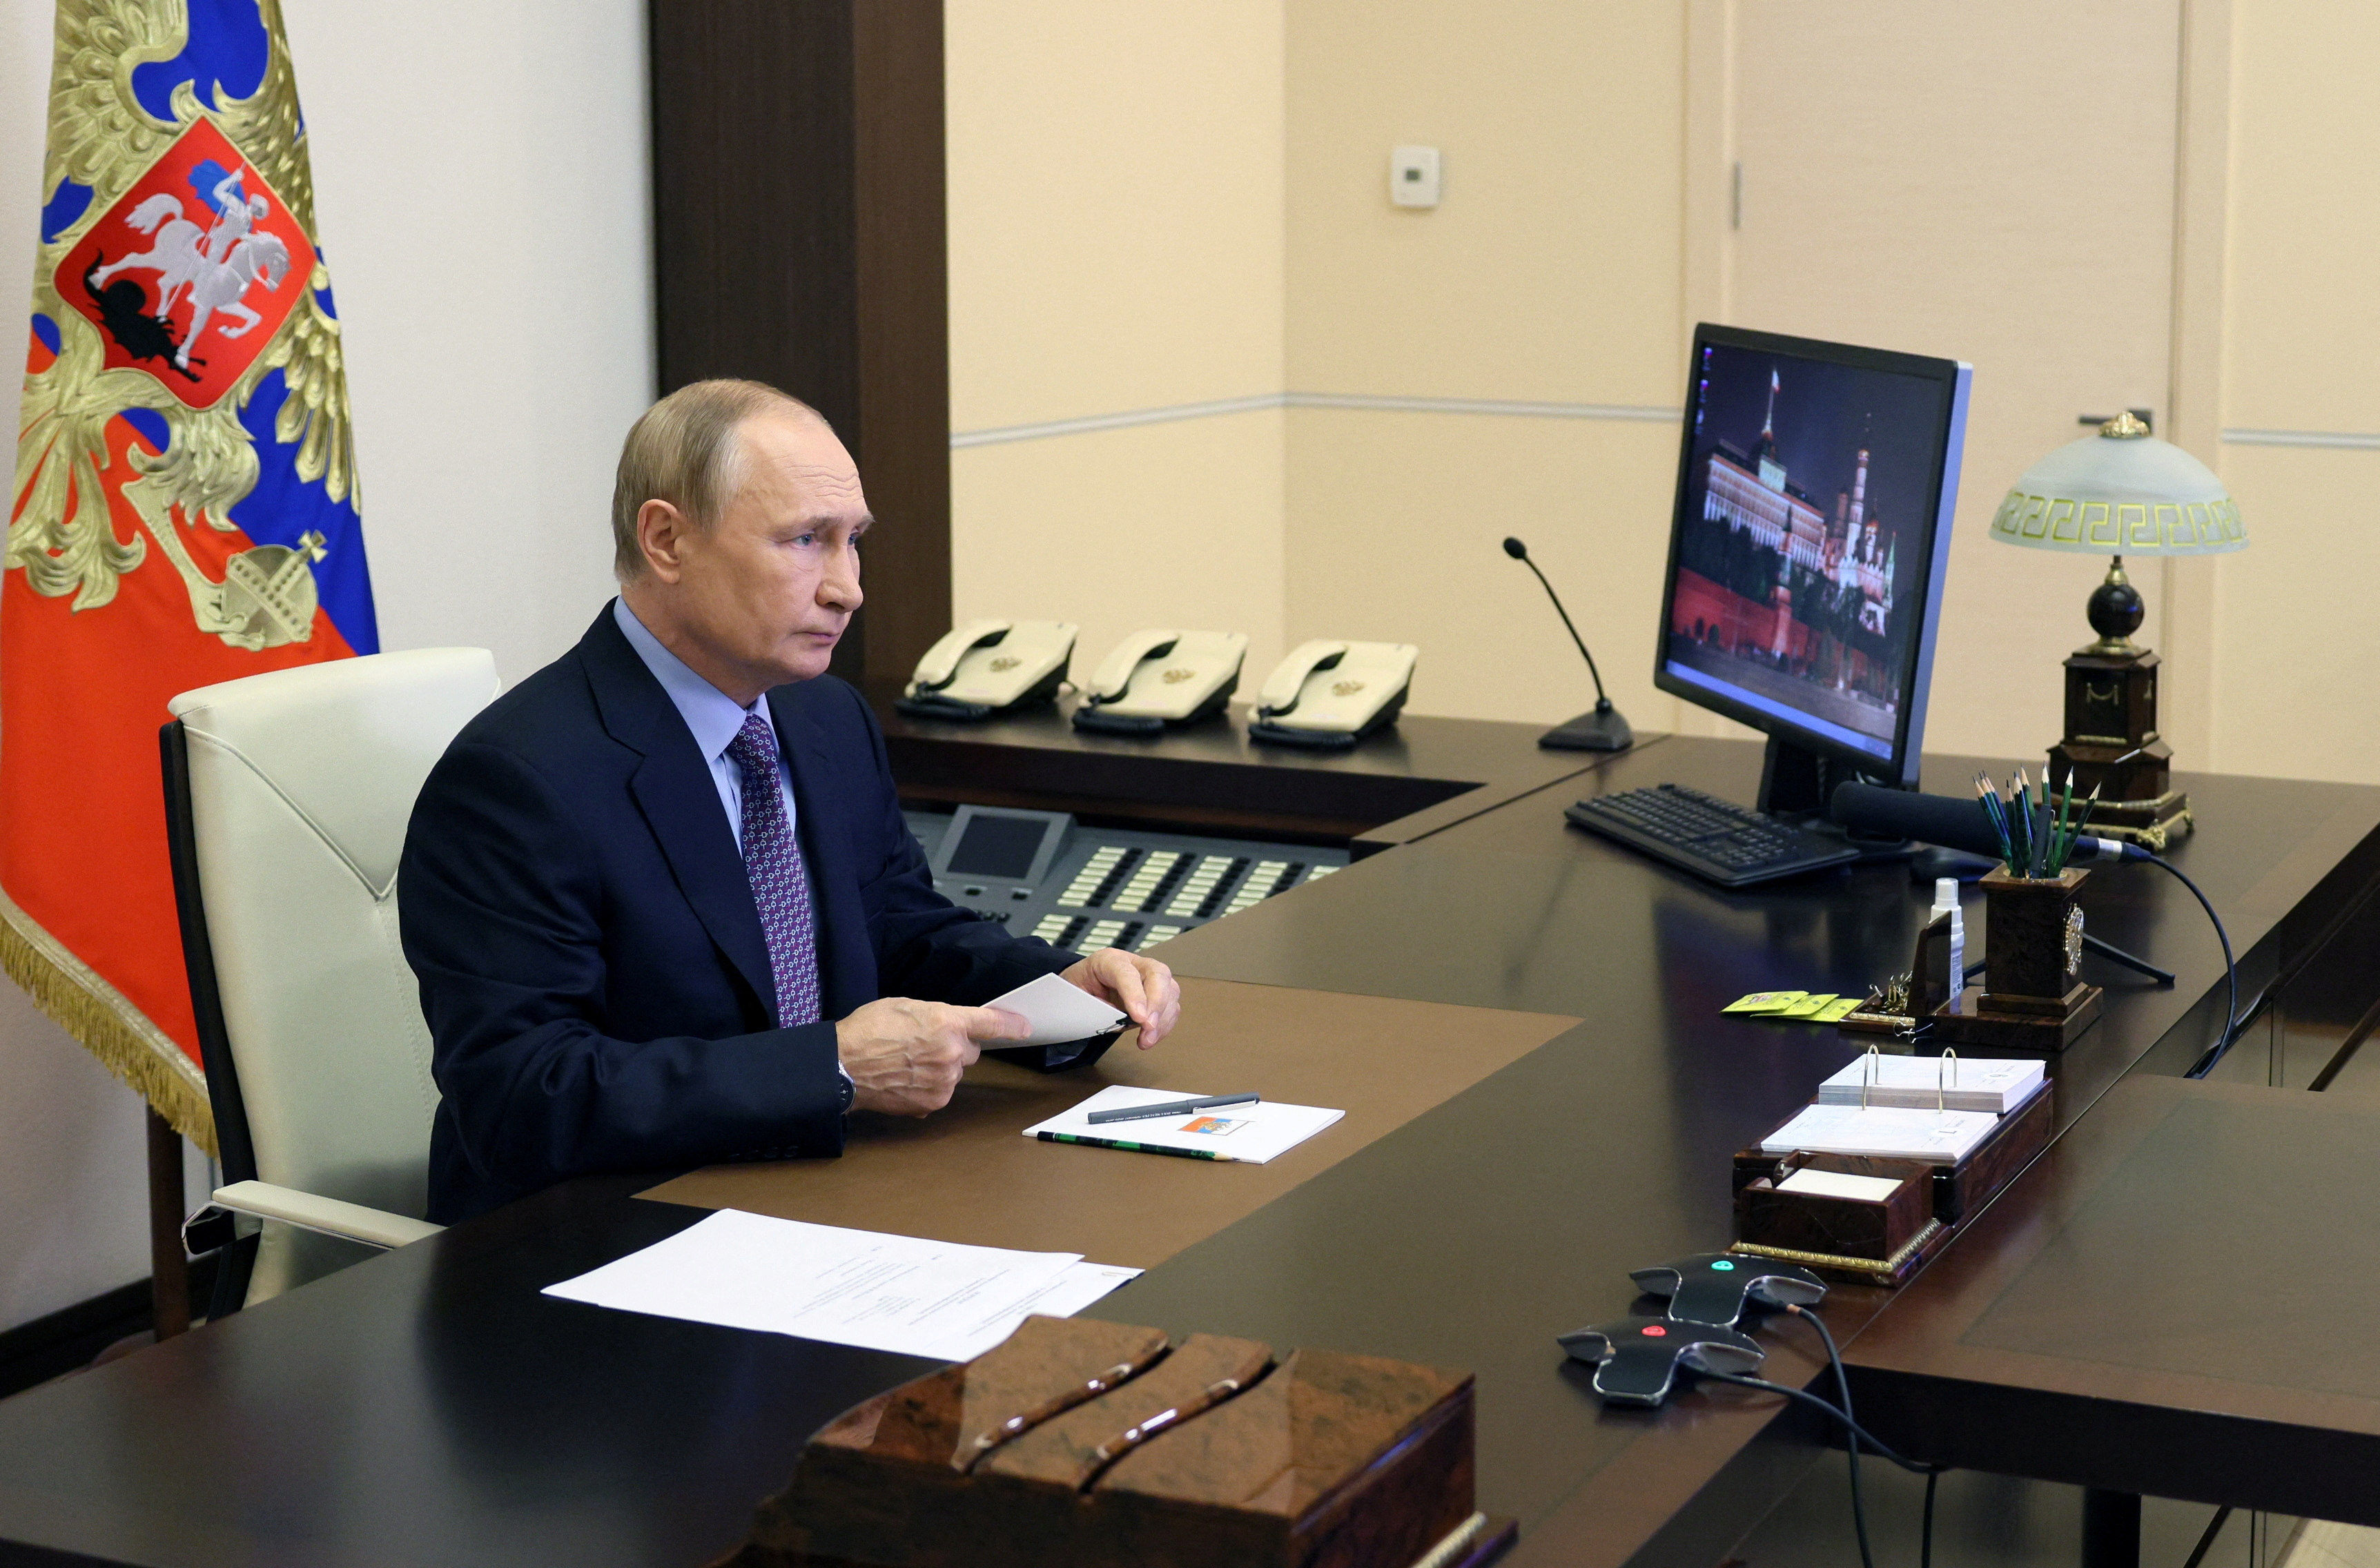 Analistas de inteligencia señalan que Vladimir Putin está cada vez más aislado y que incluso miembros de su círculo interno se animan a confrontarlo (Reuters)